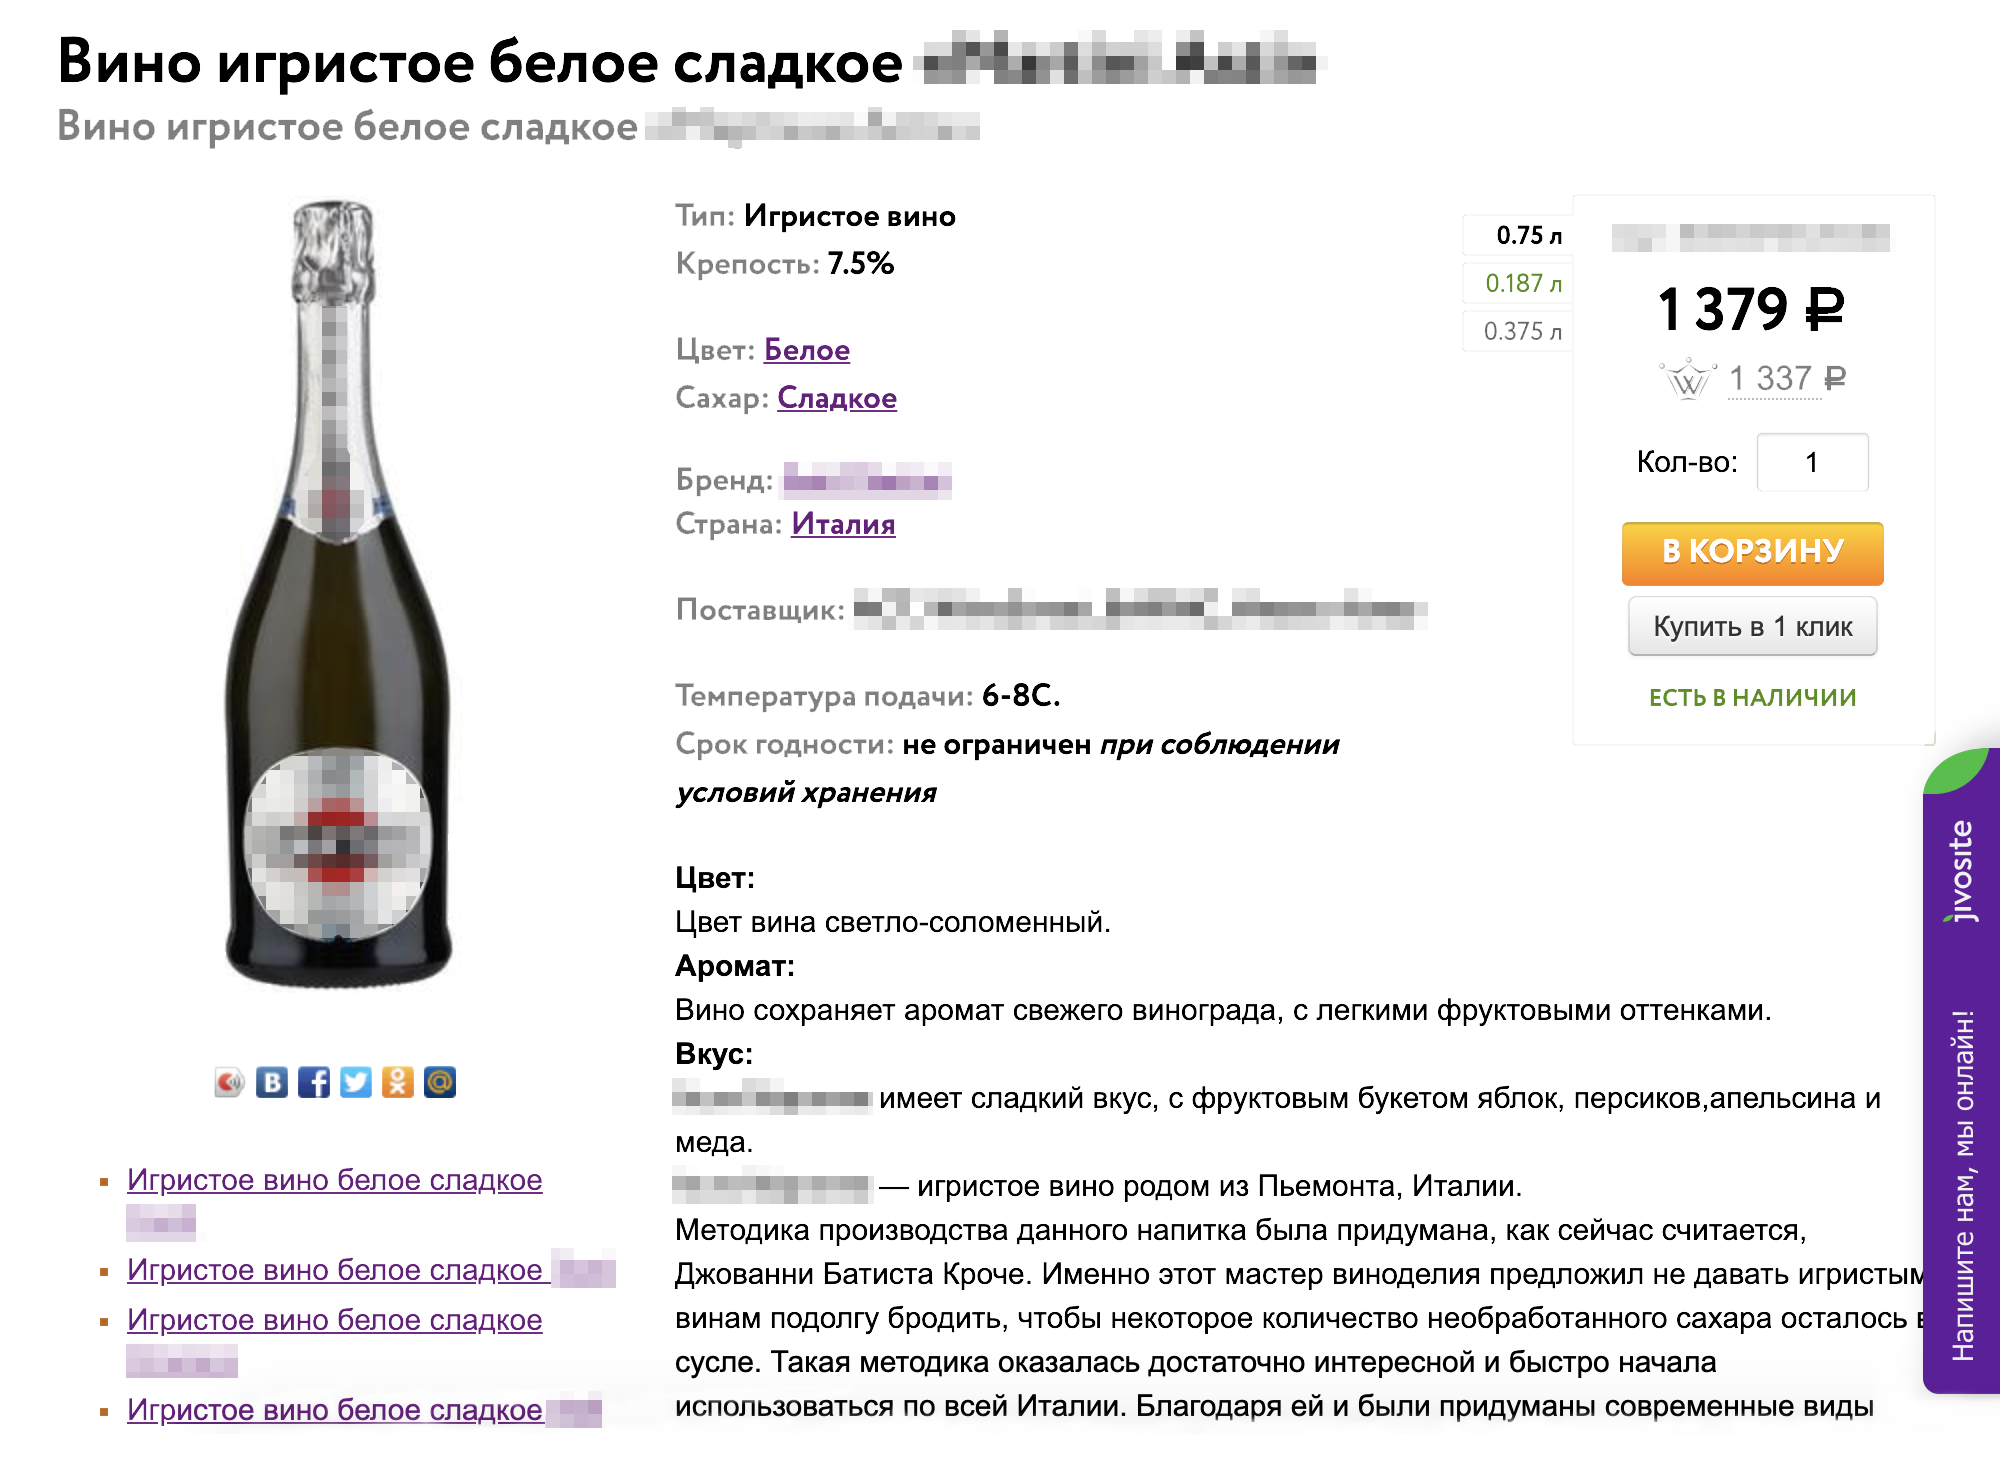 ✅ Игристое вино за 1379 ₽. Заказ делается через интернет, но забрать его можно только в розничном магазине